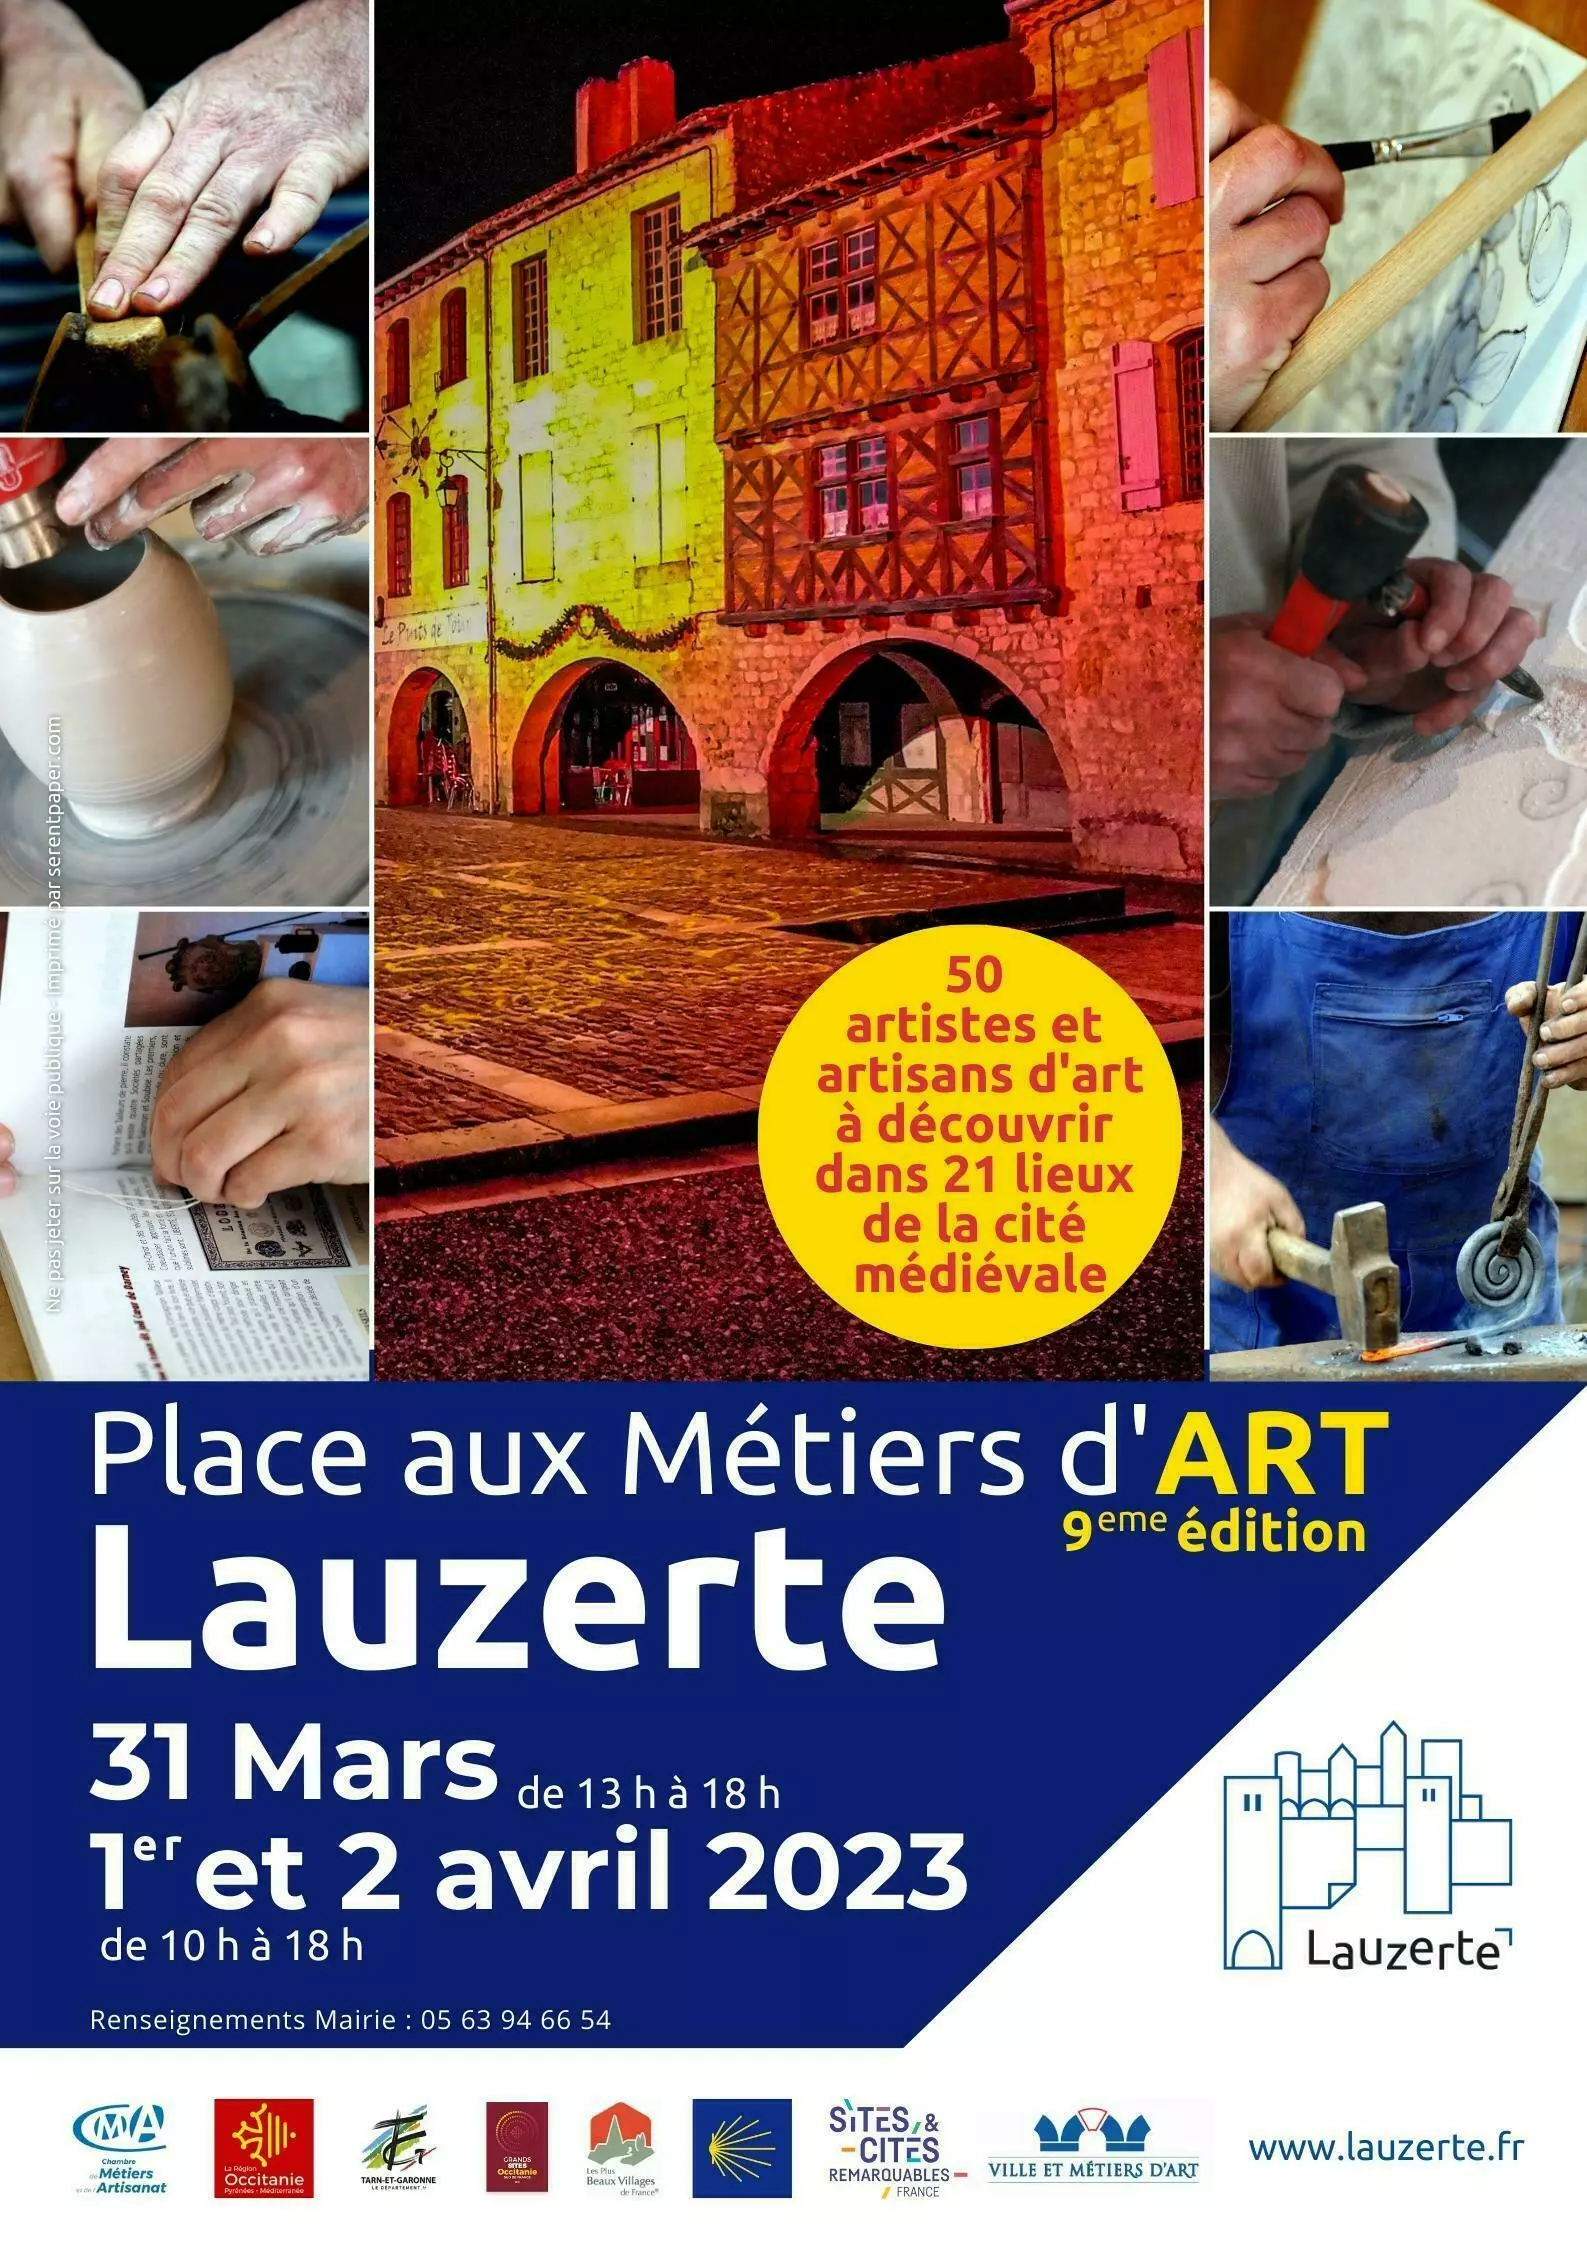 Expositions Cultures Arts-Crédits : Affiche Place aux Métiers d'Art réalisée par Sandra Clerbois / Mairie de Lauzerte